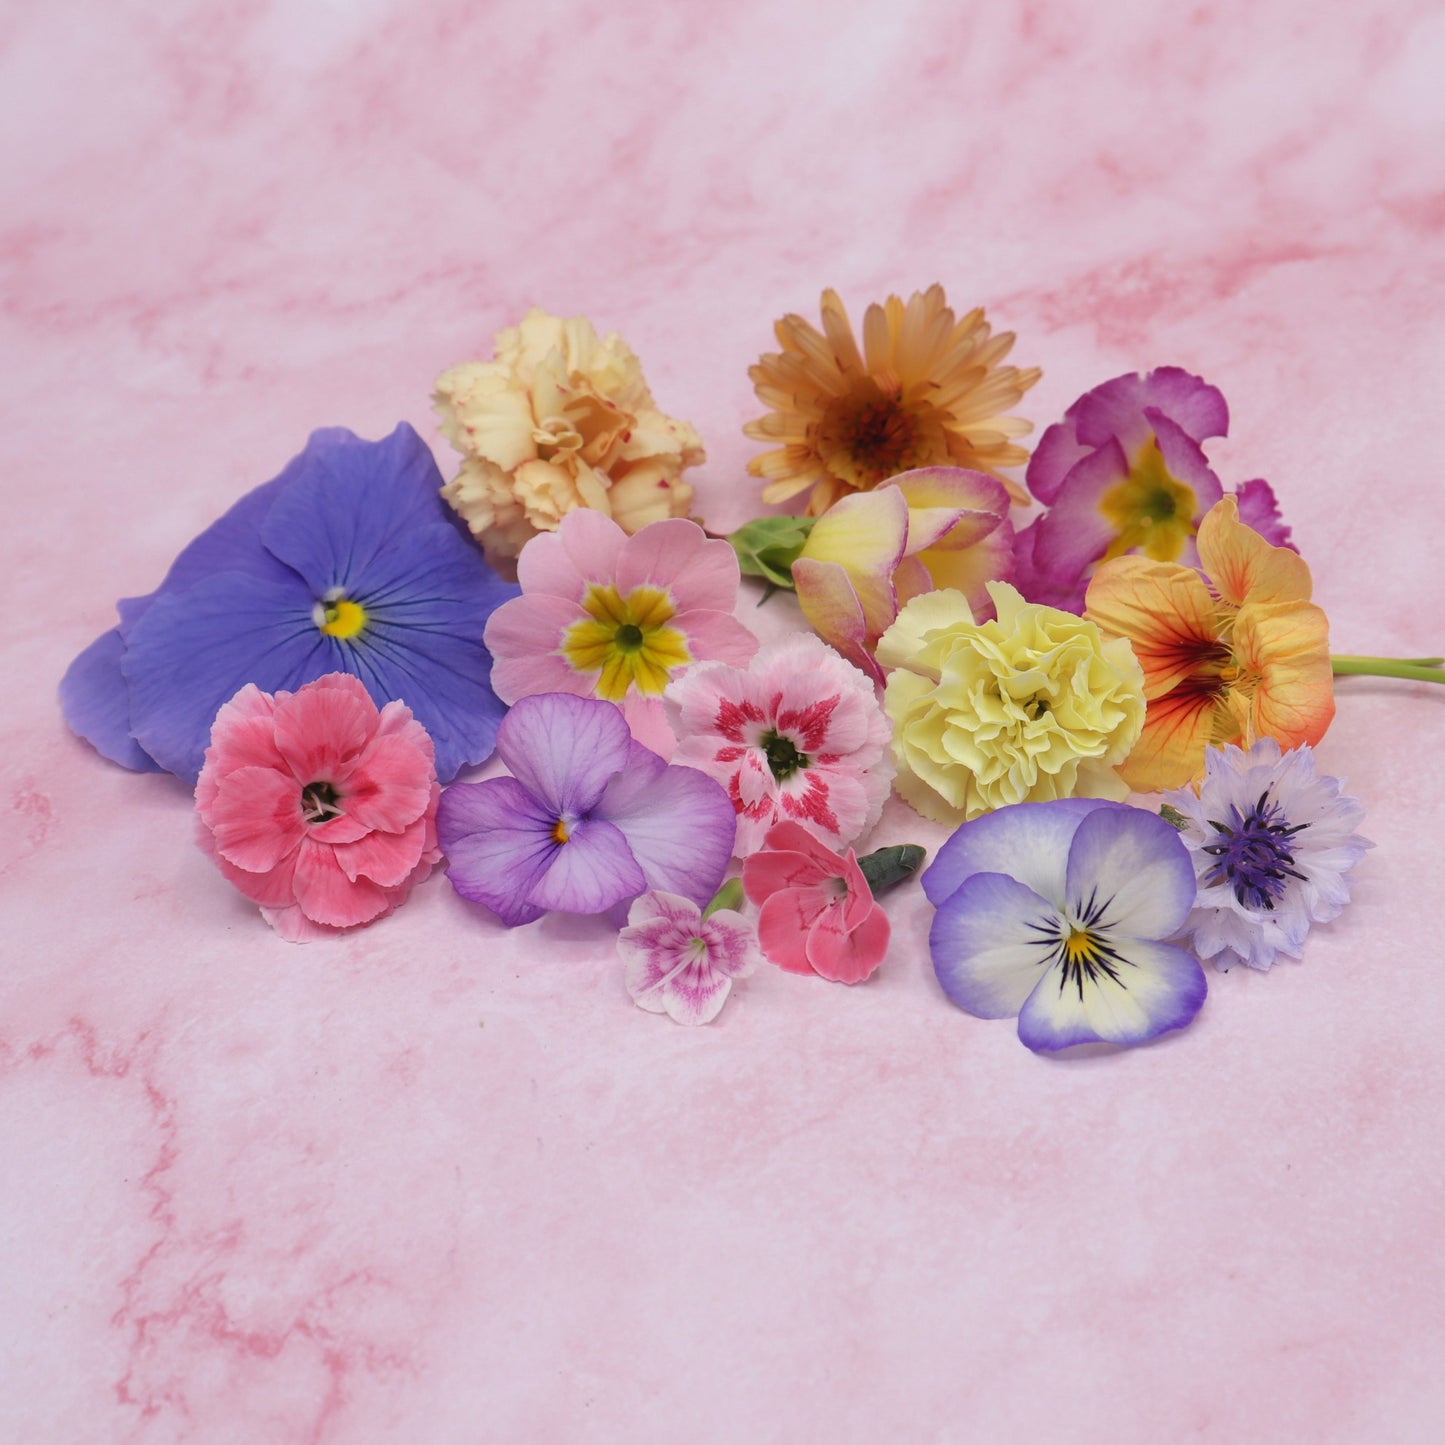 Pastel kleurige eetbare bloemen. Bruiloft, Bruidstaart, champagne, cupcakes, dripcake, lieve kleuren. Floral Delight